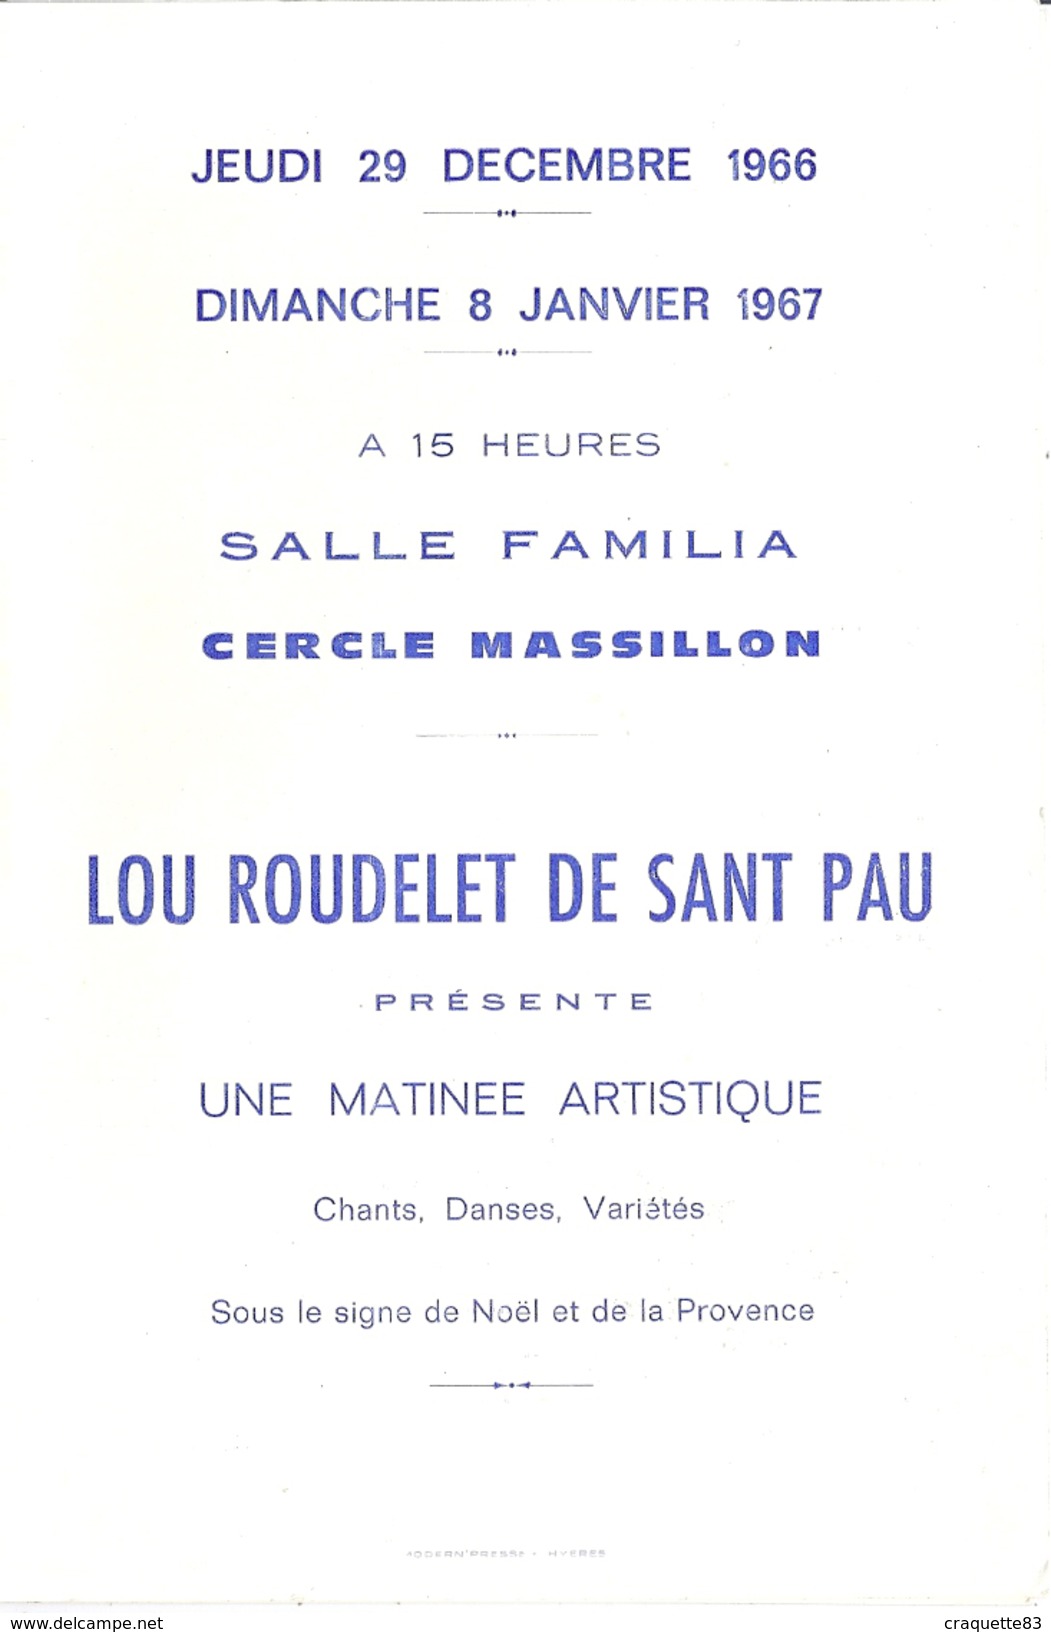 HYERES VAR-CERCLE MASSILLON-SALLE FAMILIA "LOU ROUDELET DE SANT PAU" PRESENTE ARTISTIQUE  JANVIER 1967 - Programmes